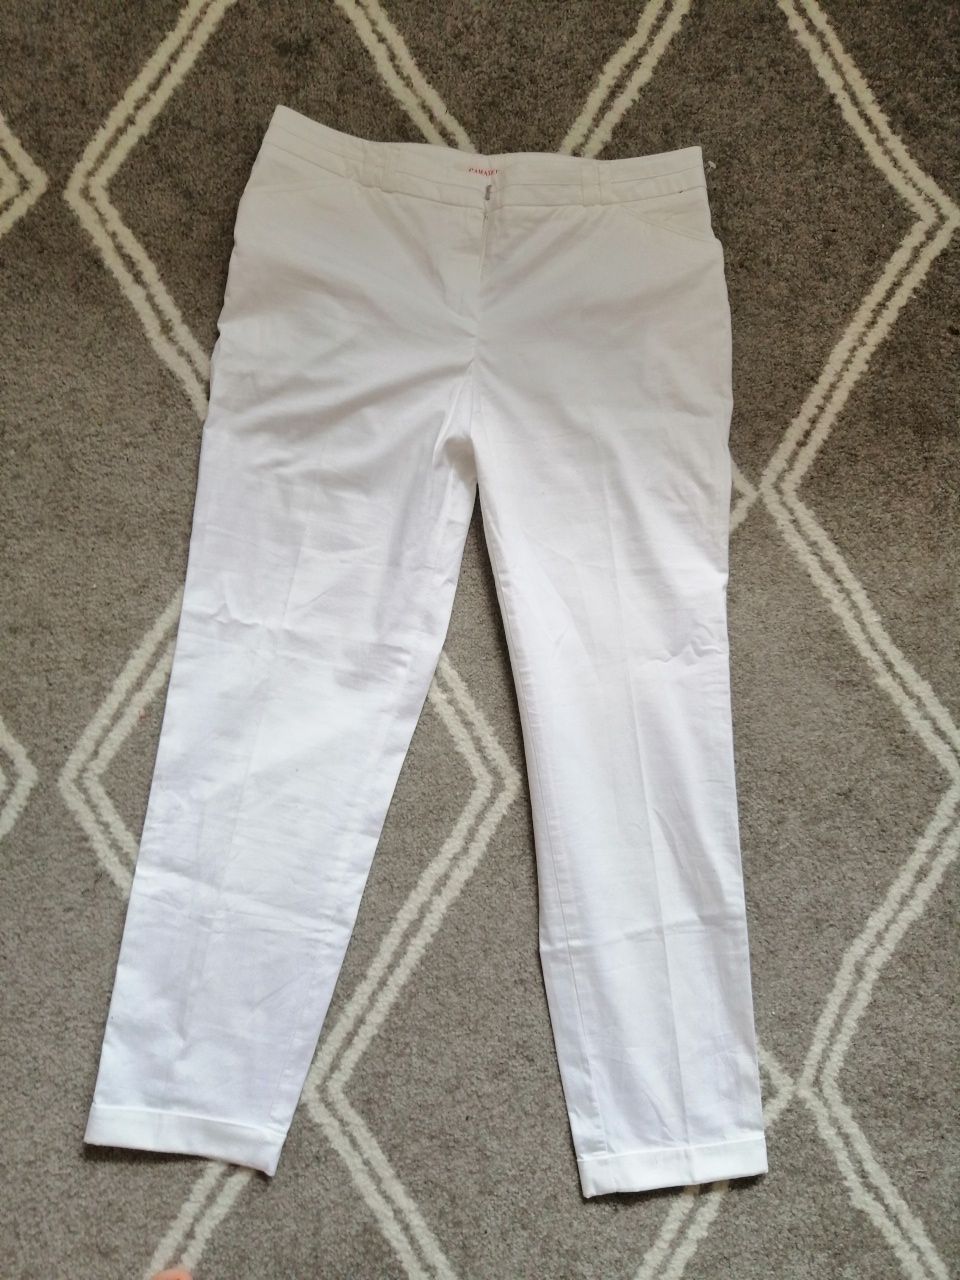 Spodnie białe długie prosta nogawka